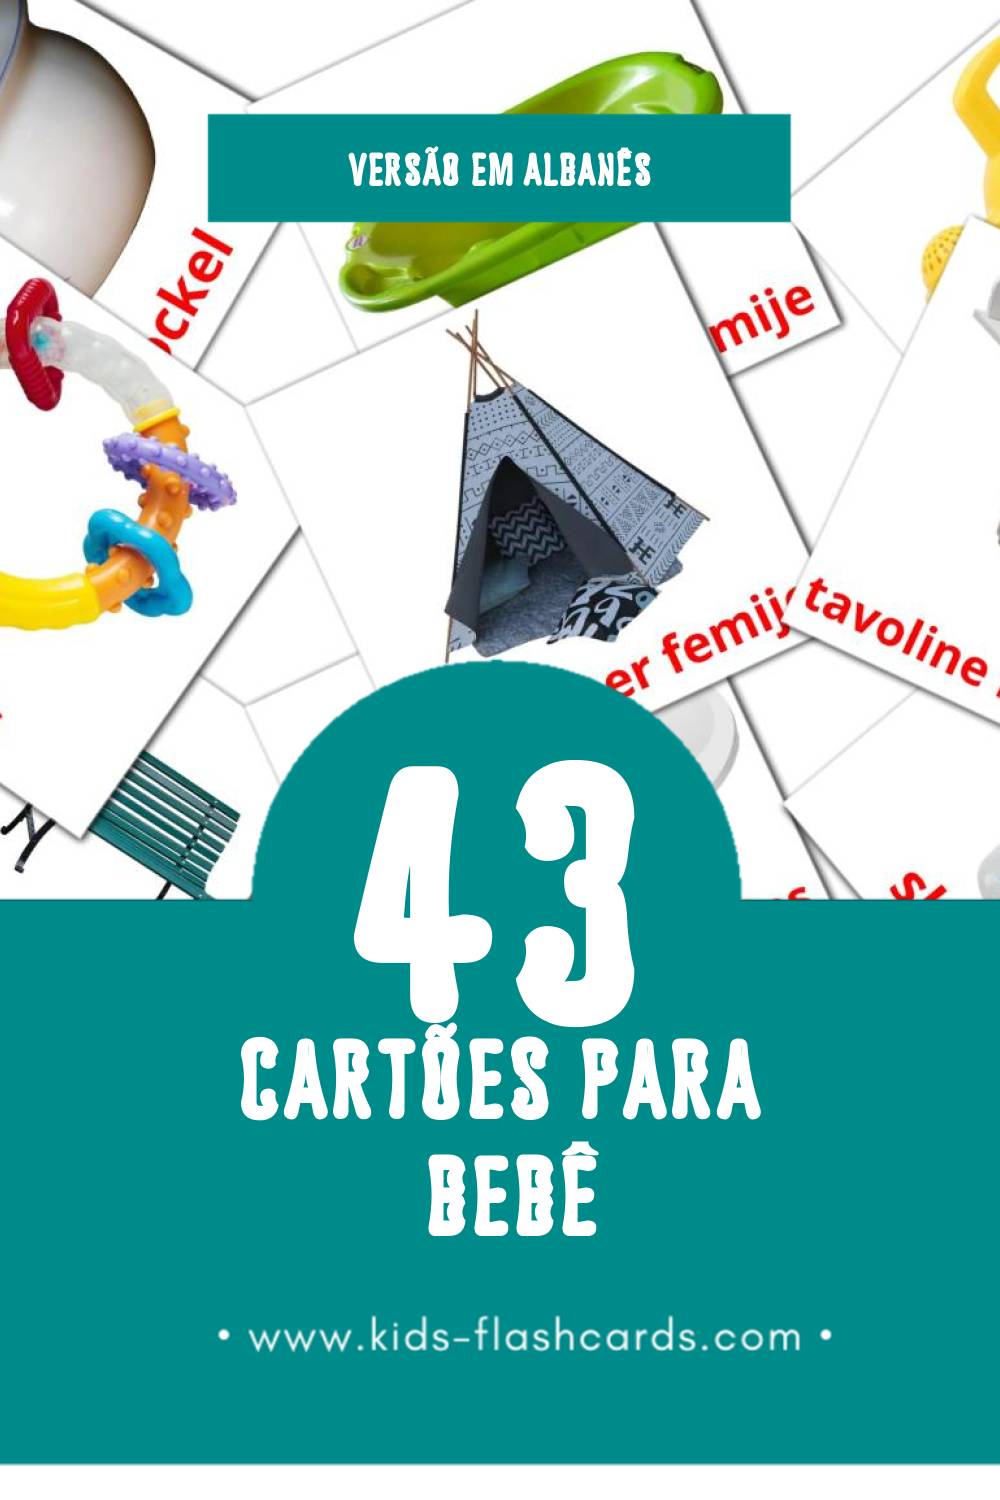 Flashcards de Rroba Visuais para Toddlers (43 cartões em Albanês)